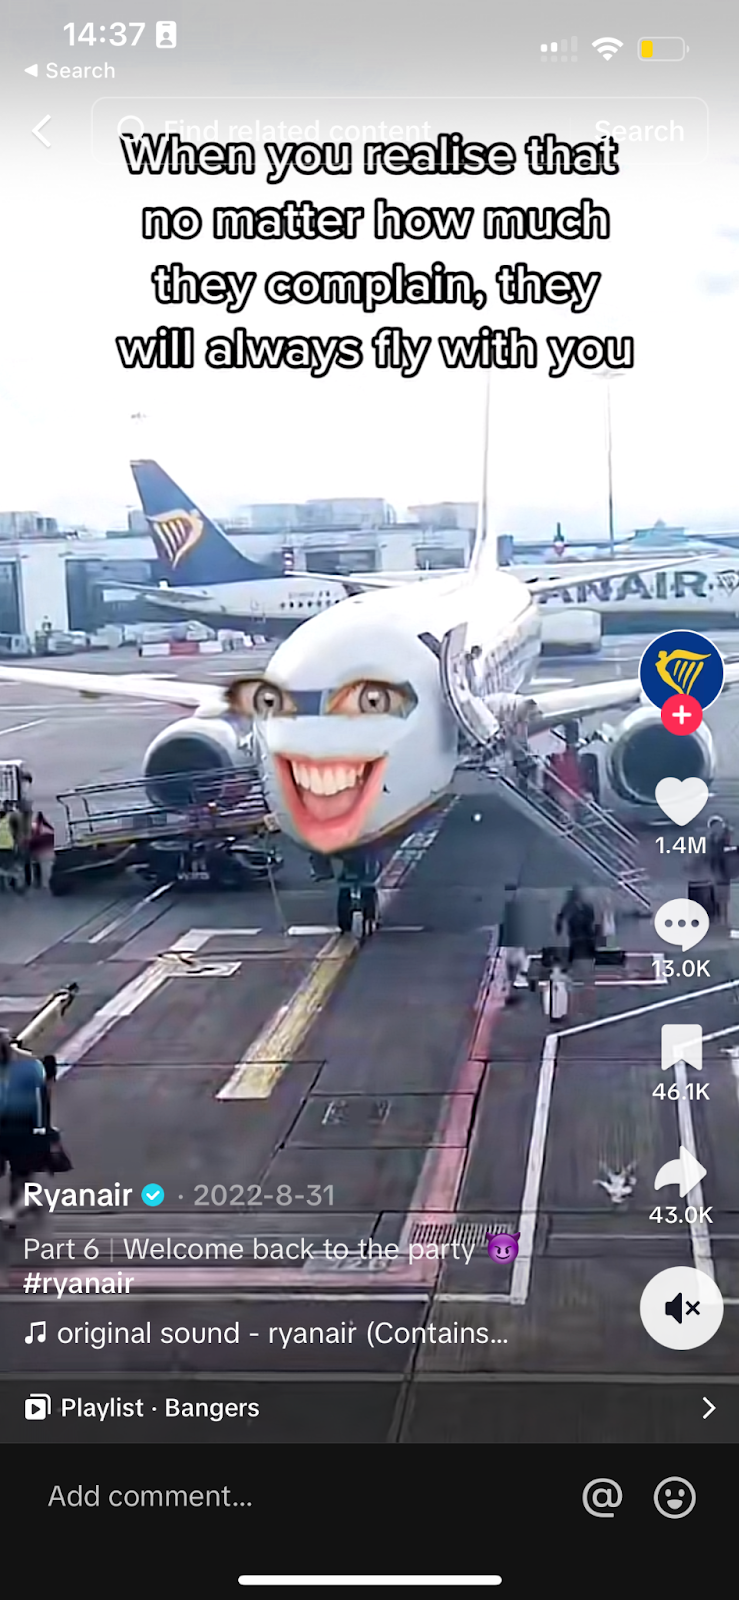 Ryanair's video on TikTok using humor